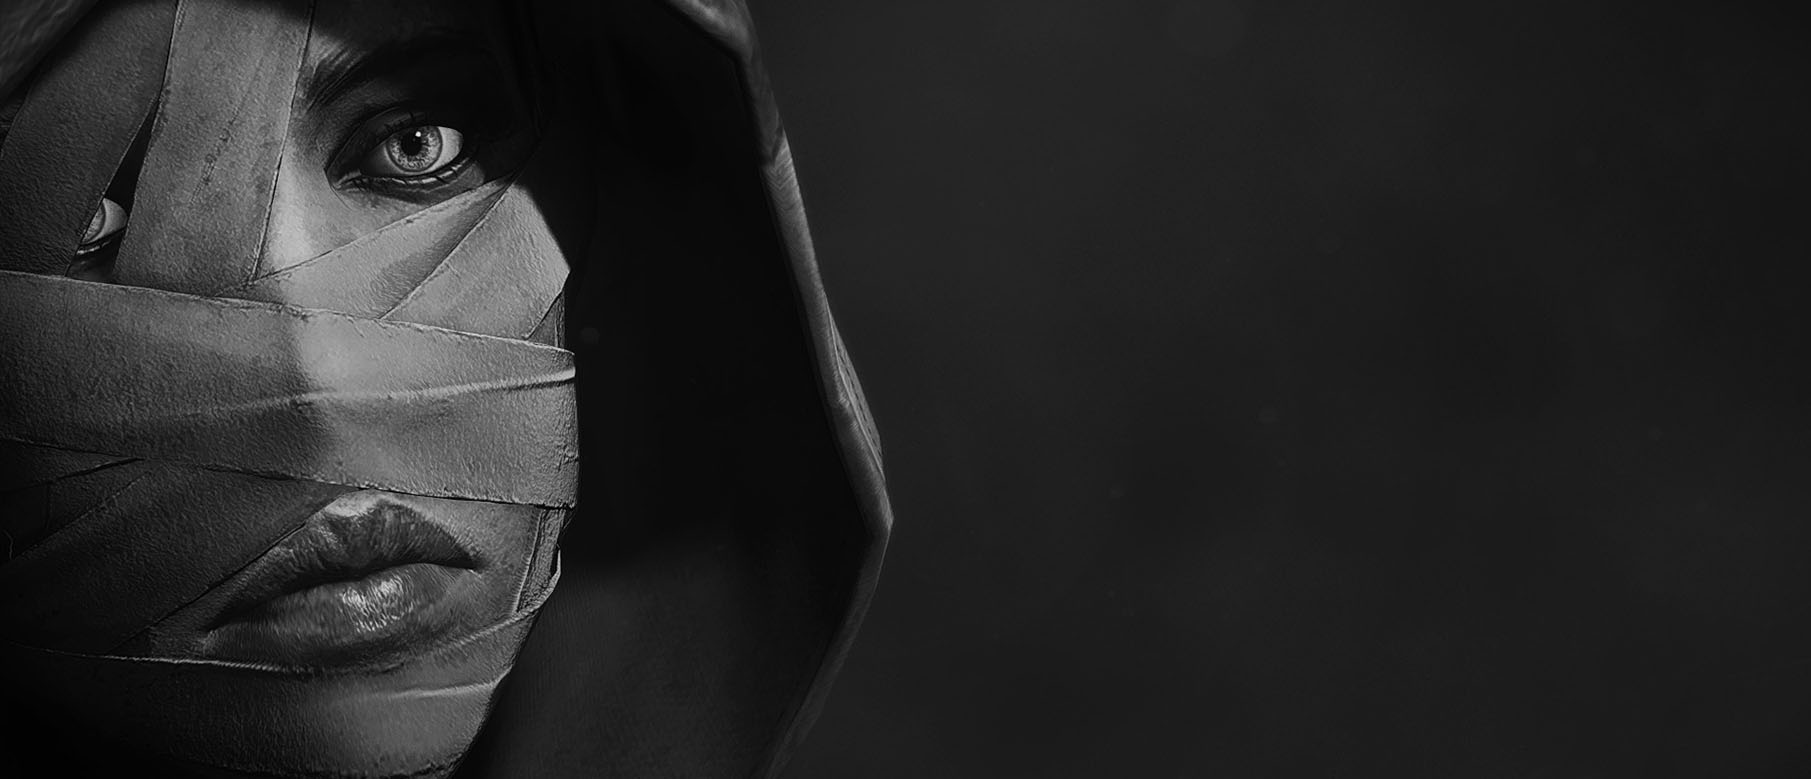 Изображение к Режим новой игры+ в Dishonored 2 позволяет комбинировать способности Корво и Эмили